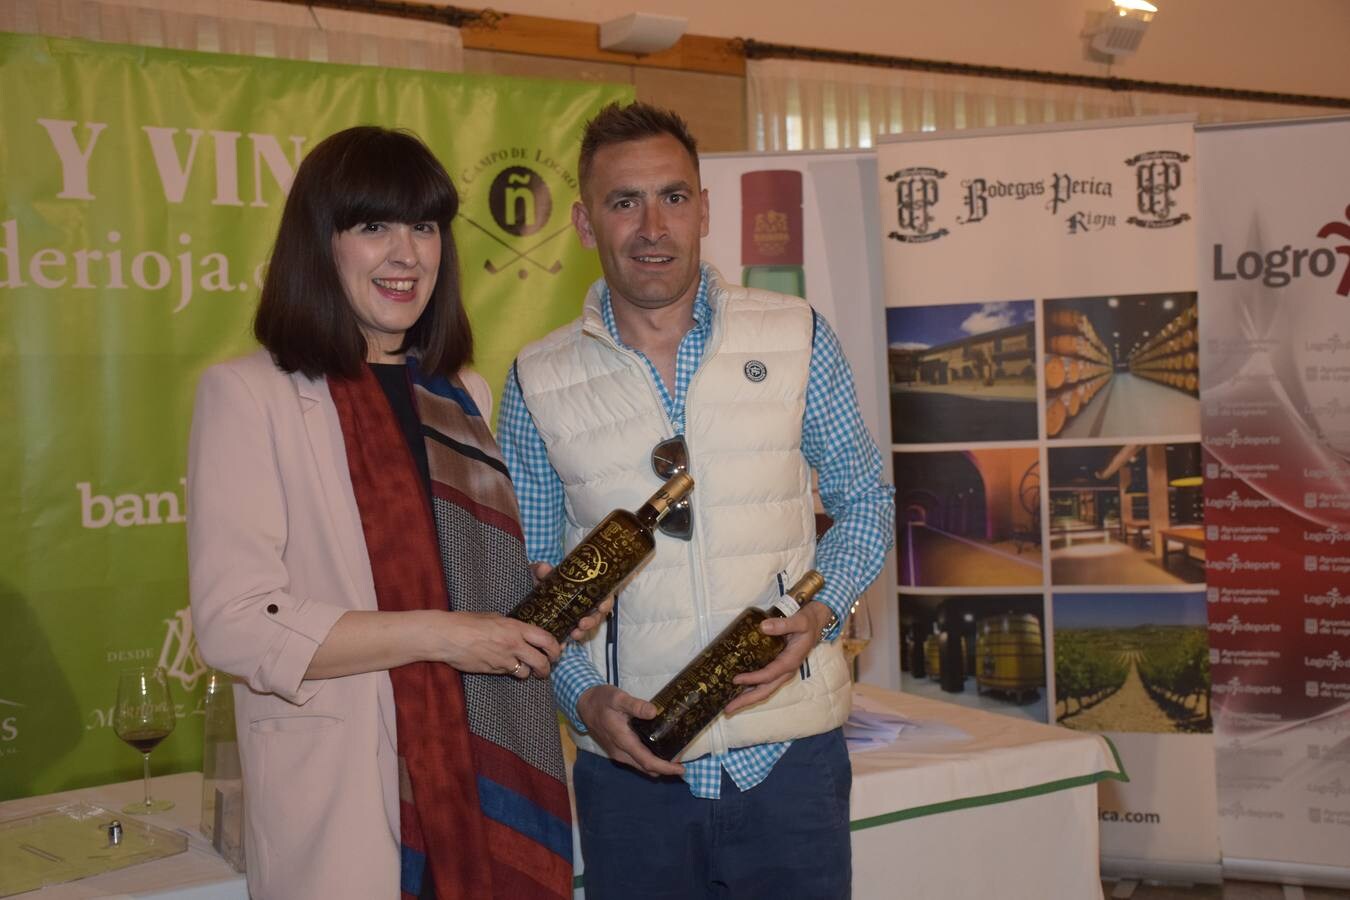 Los ganadores del torneo de la LIga de Golf y Vino recibieron sus premios.